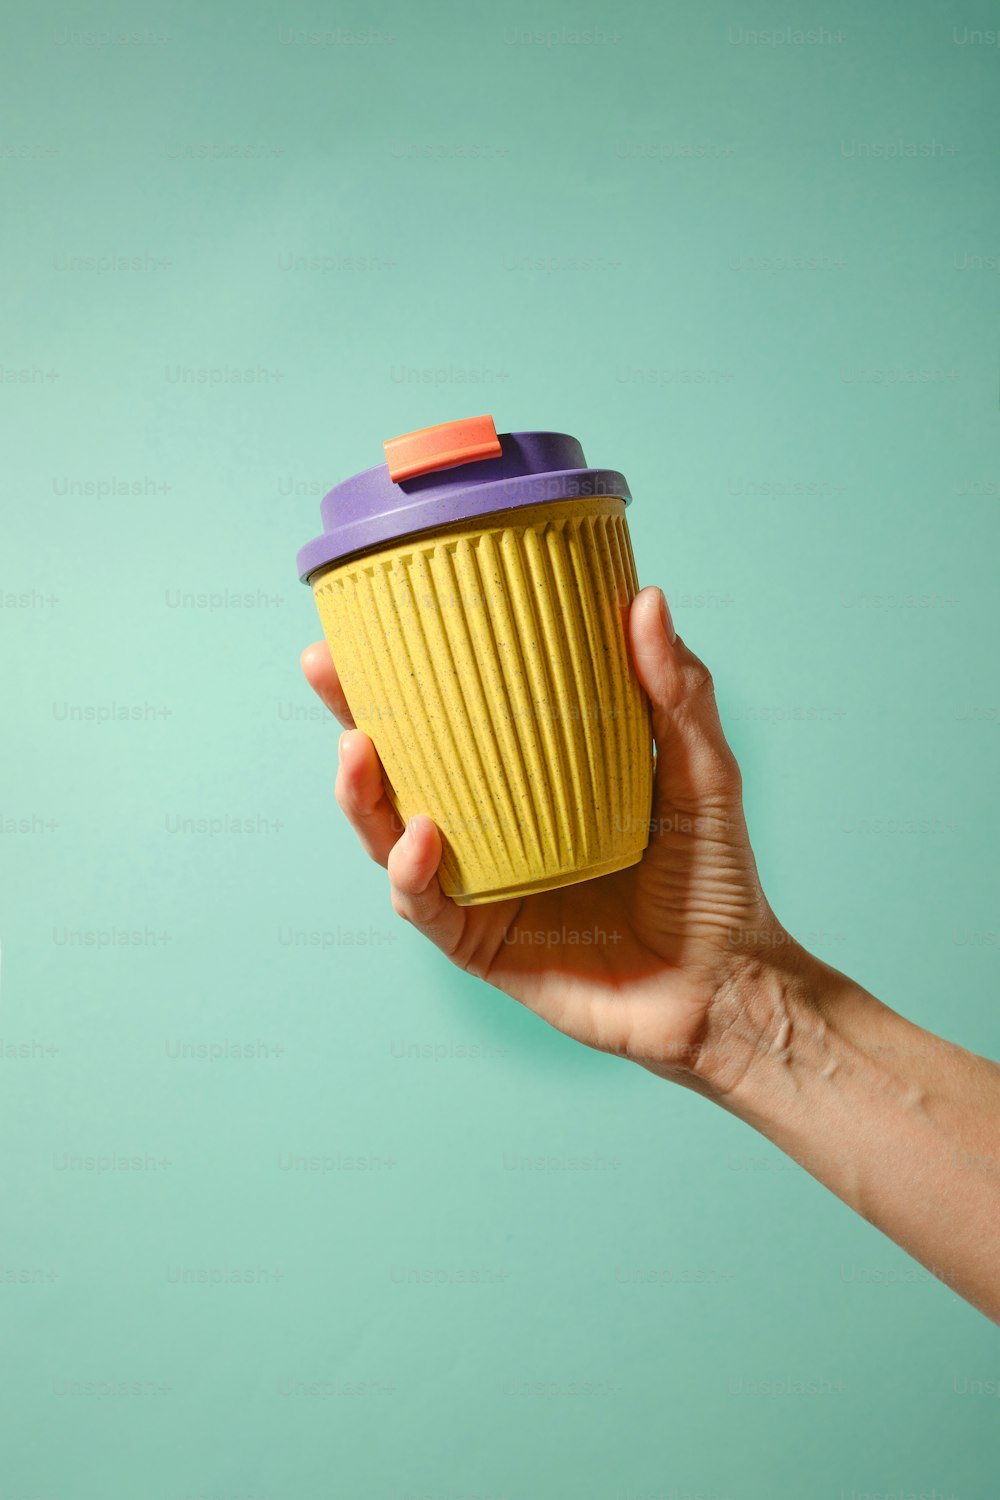 보라색 뚜껑이 있는 노란색 컵을 들고 있는 손